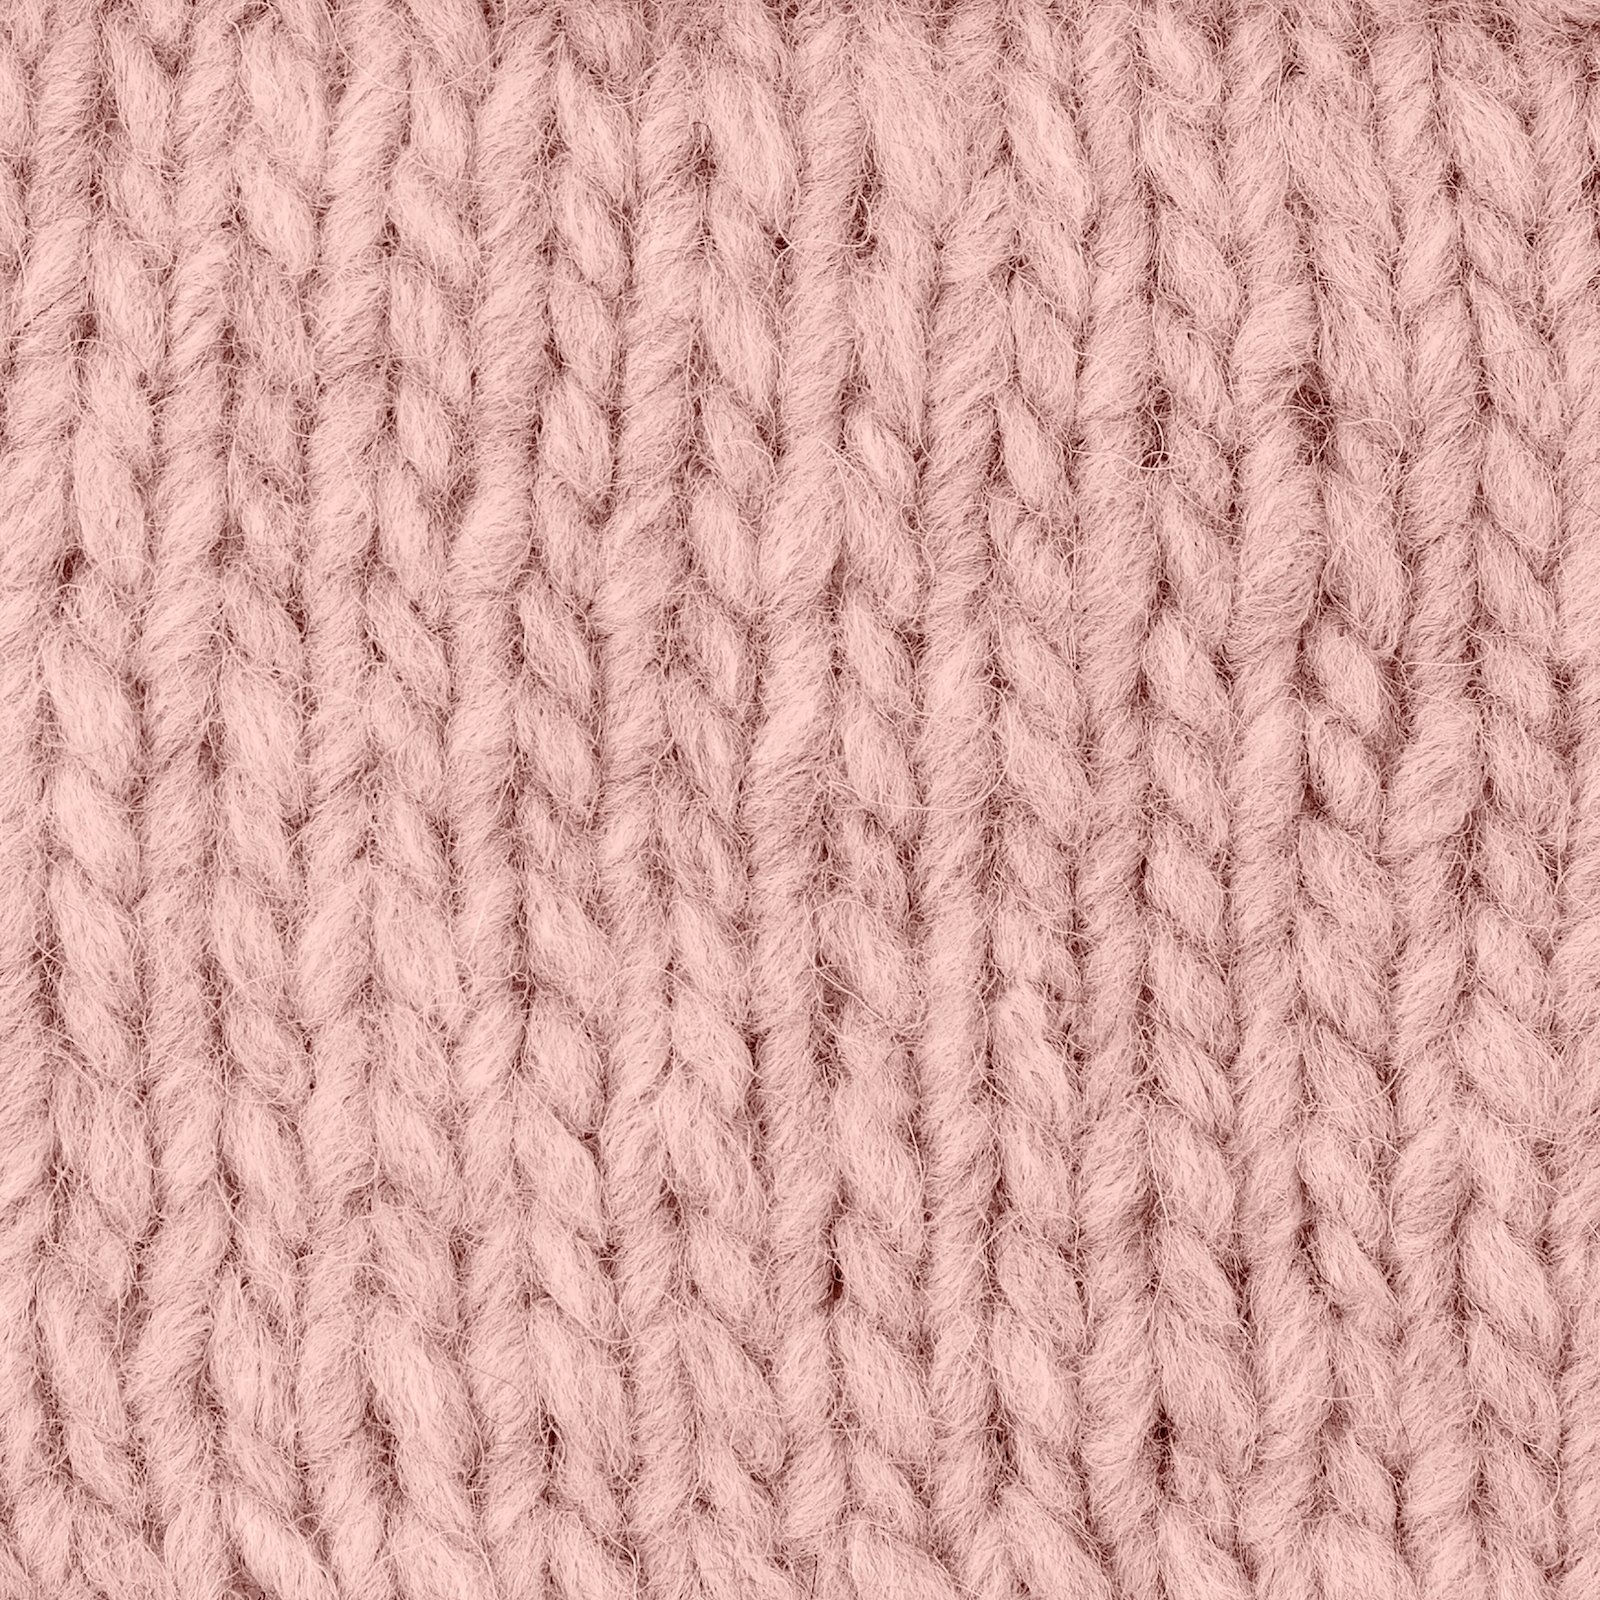 FRAYA, mixed yarn "Comfy", powder 90054838_sskit